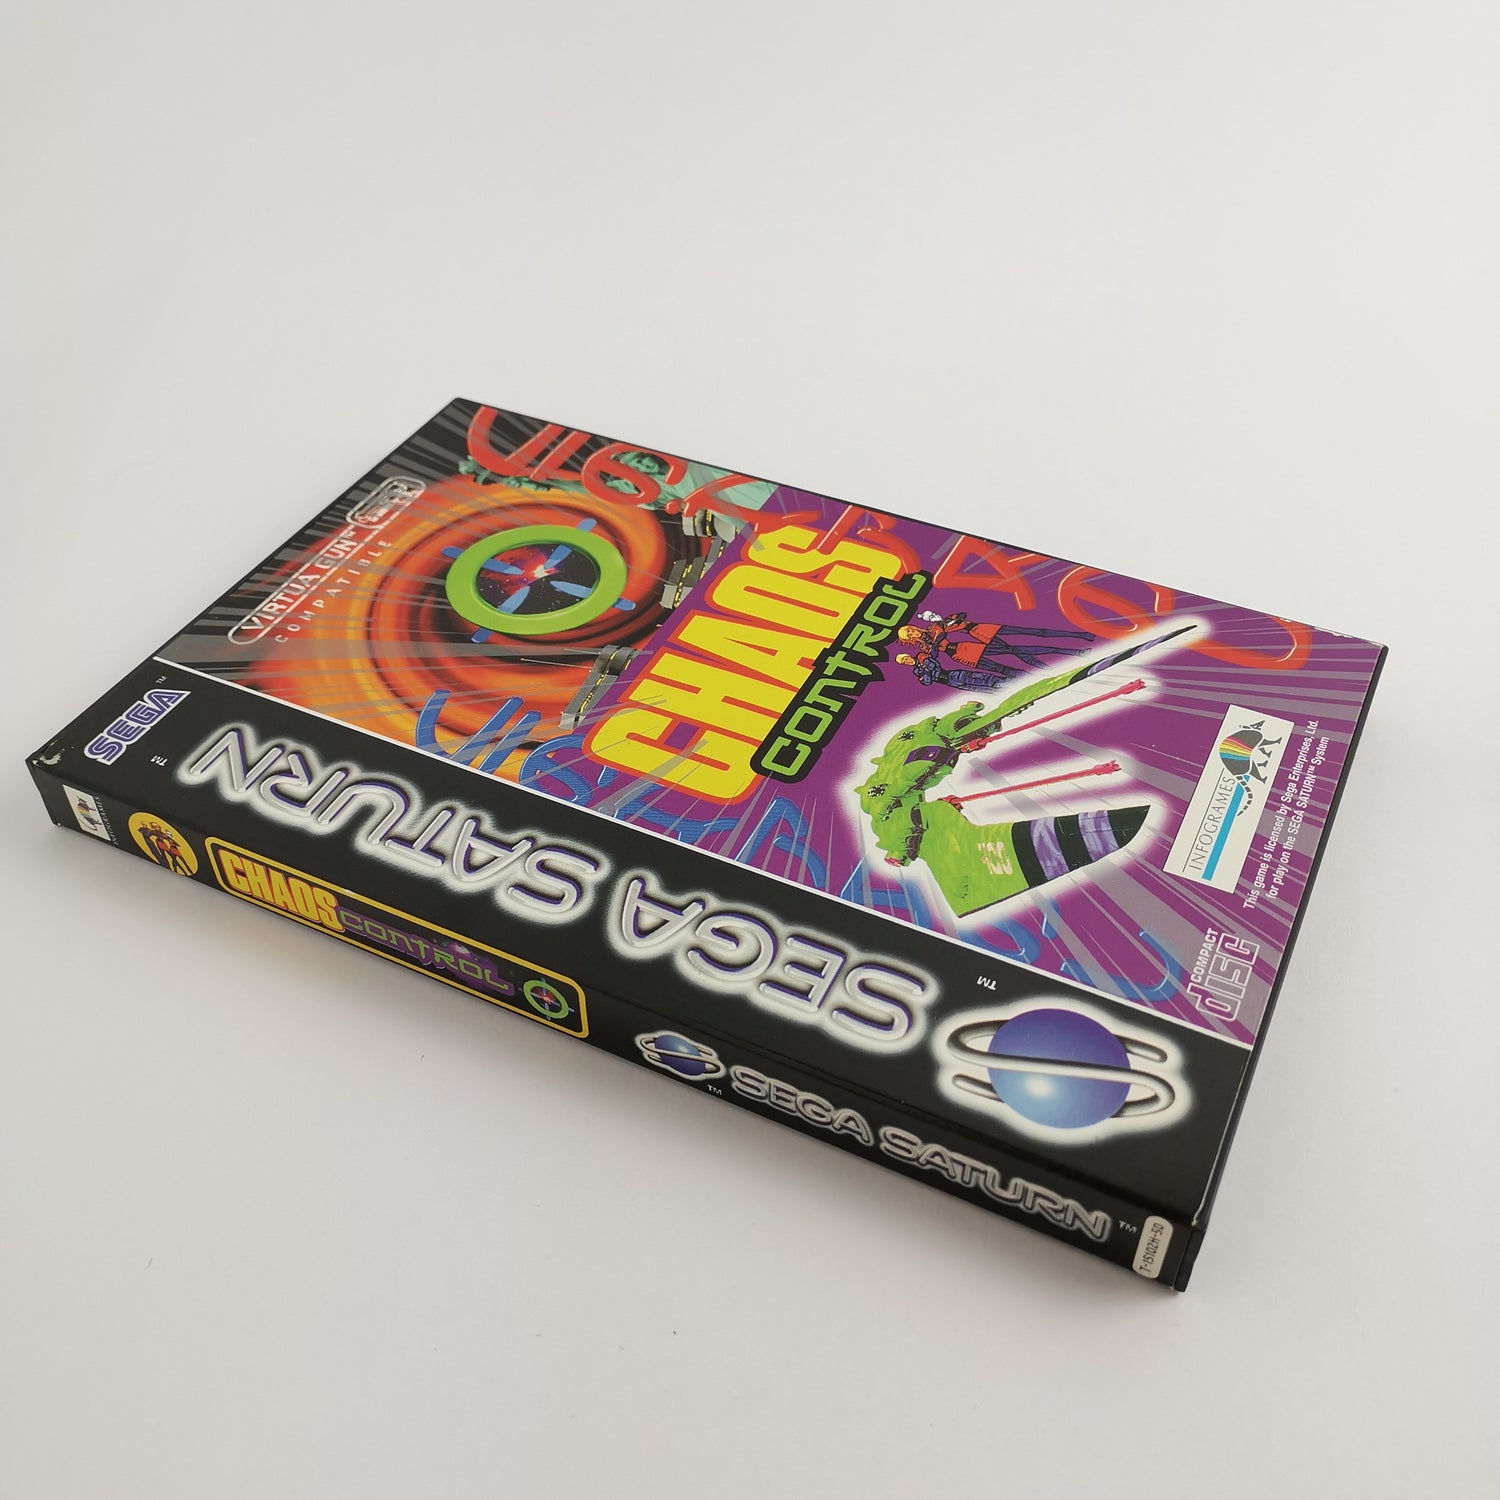 Sega Saturn Game: Chaos Control | SegaSaturn - original packaging PAL version